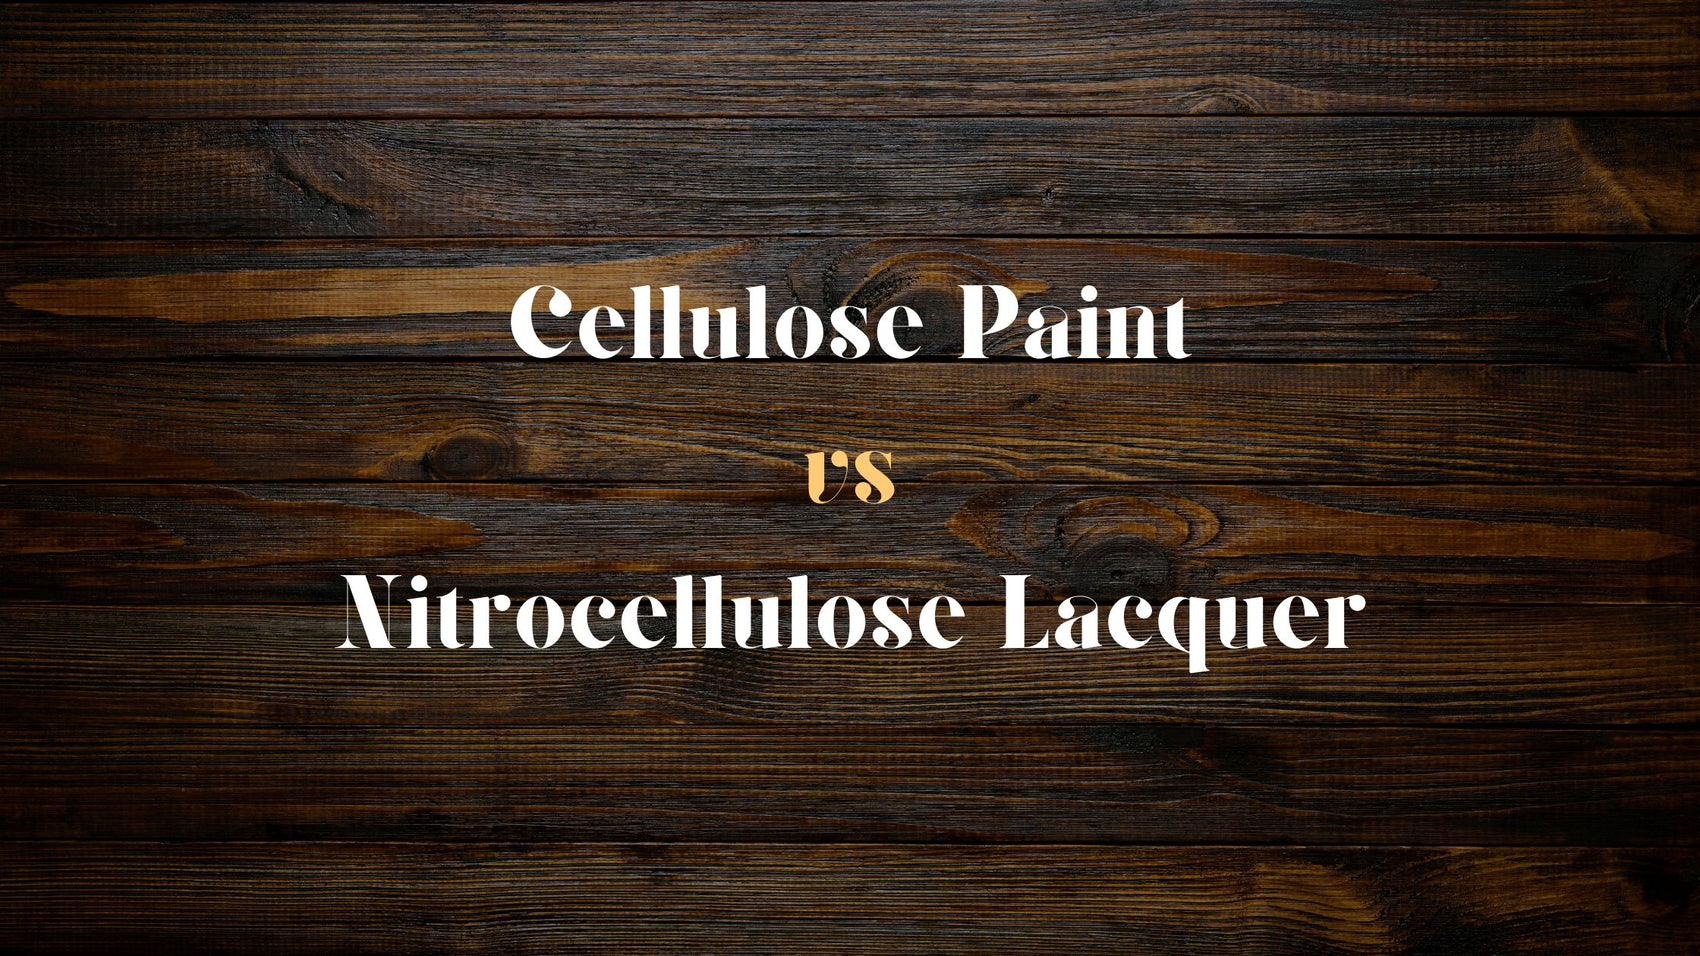 Cellulose Paint vs Nitrocellulose Lacquer